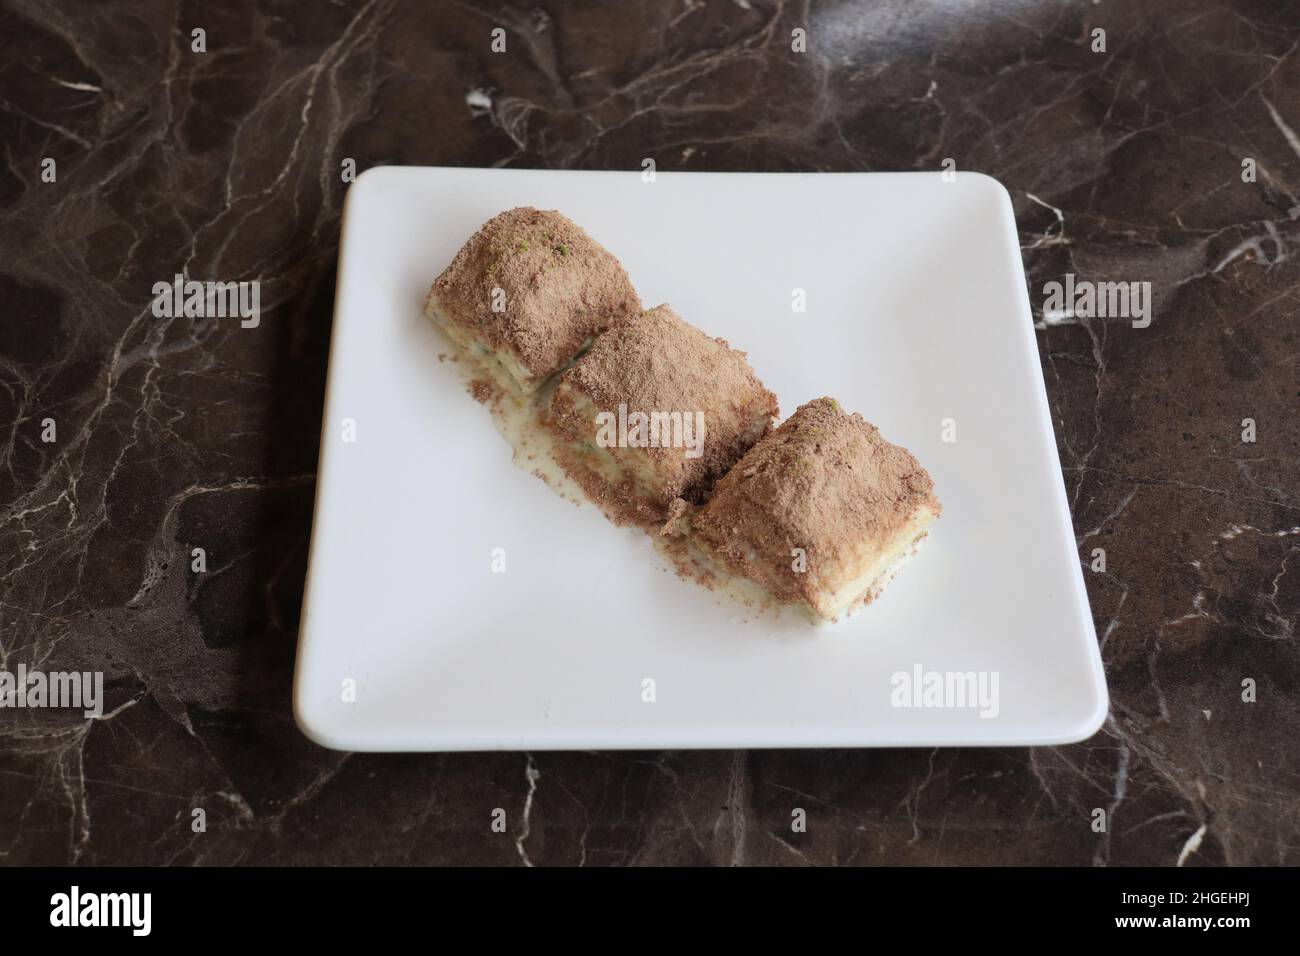 Le baklava est un dessert de pâtisserie en couches fait de pâte filo, rempli de noix hachées, et sucré avec du sirop ou du miel. Banque D'Images